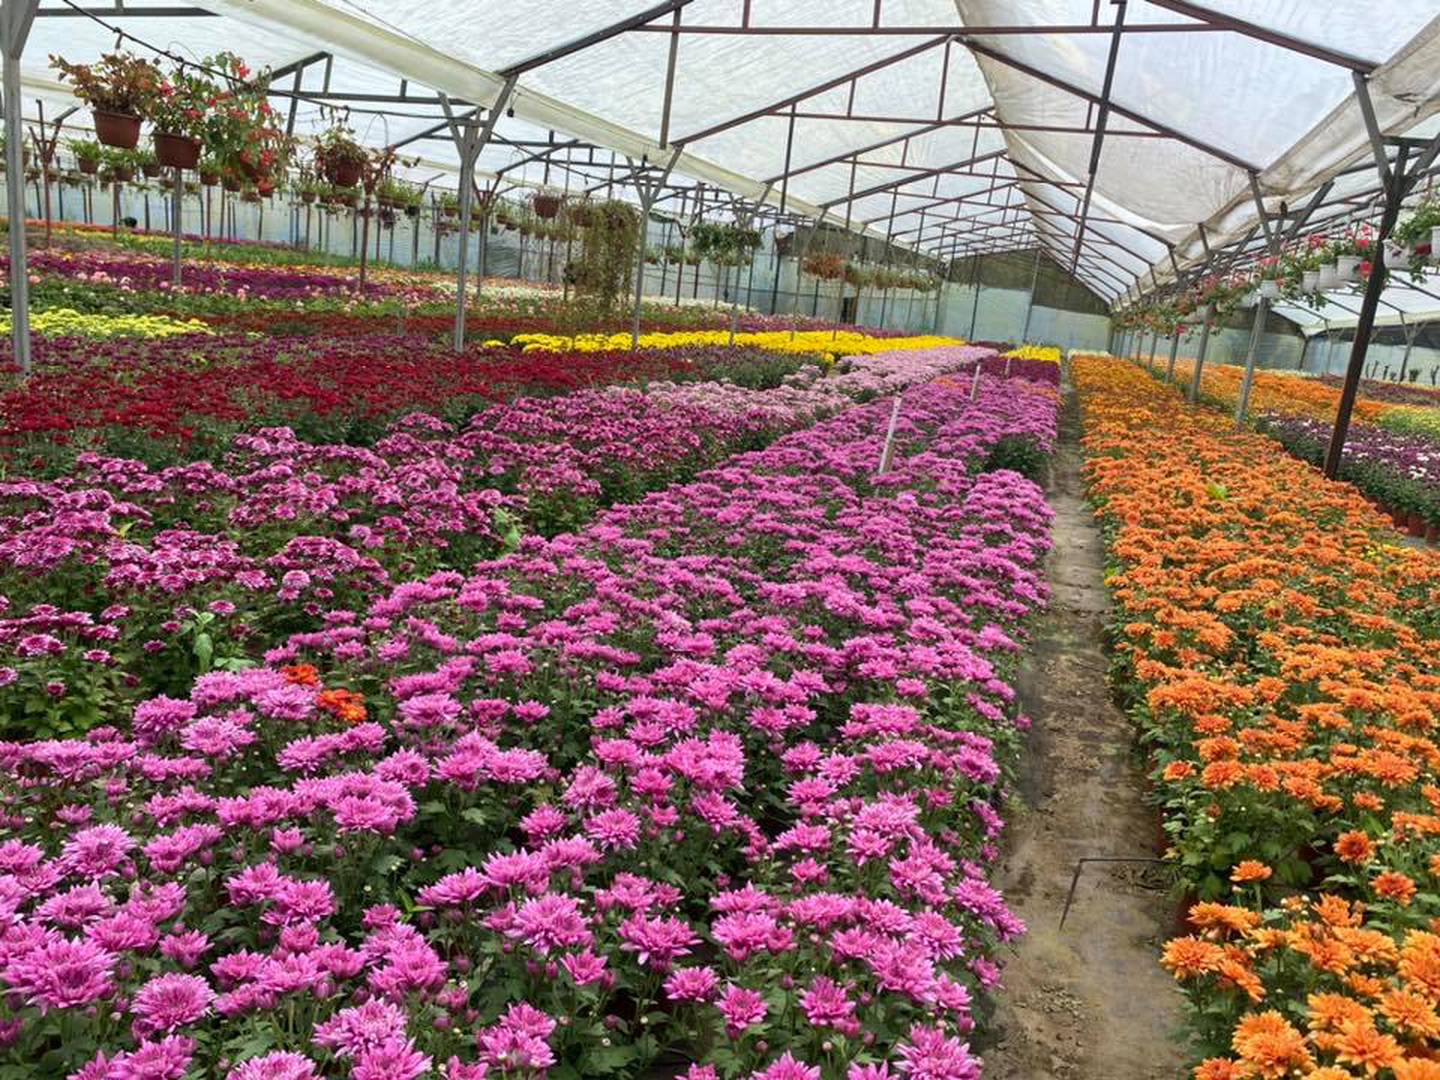 Producción de flores en el vivero El Zamorano. Las empresas de plantas, flores y follajes intentan revivir del fuerte impacto causado por la pandemia.